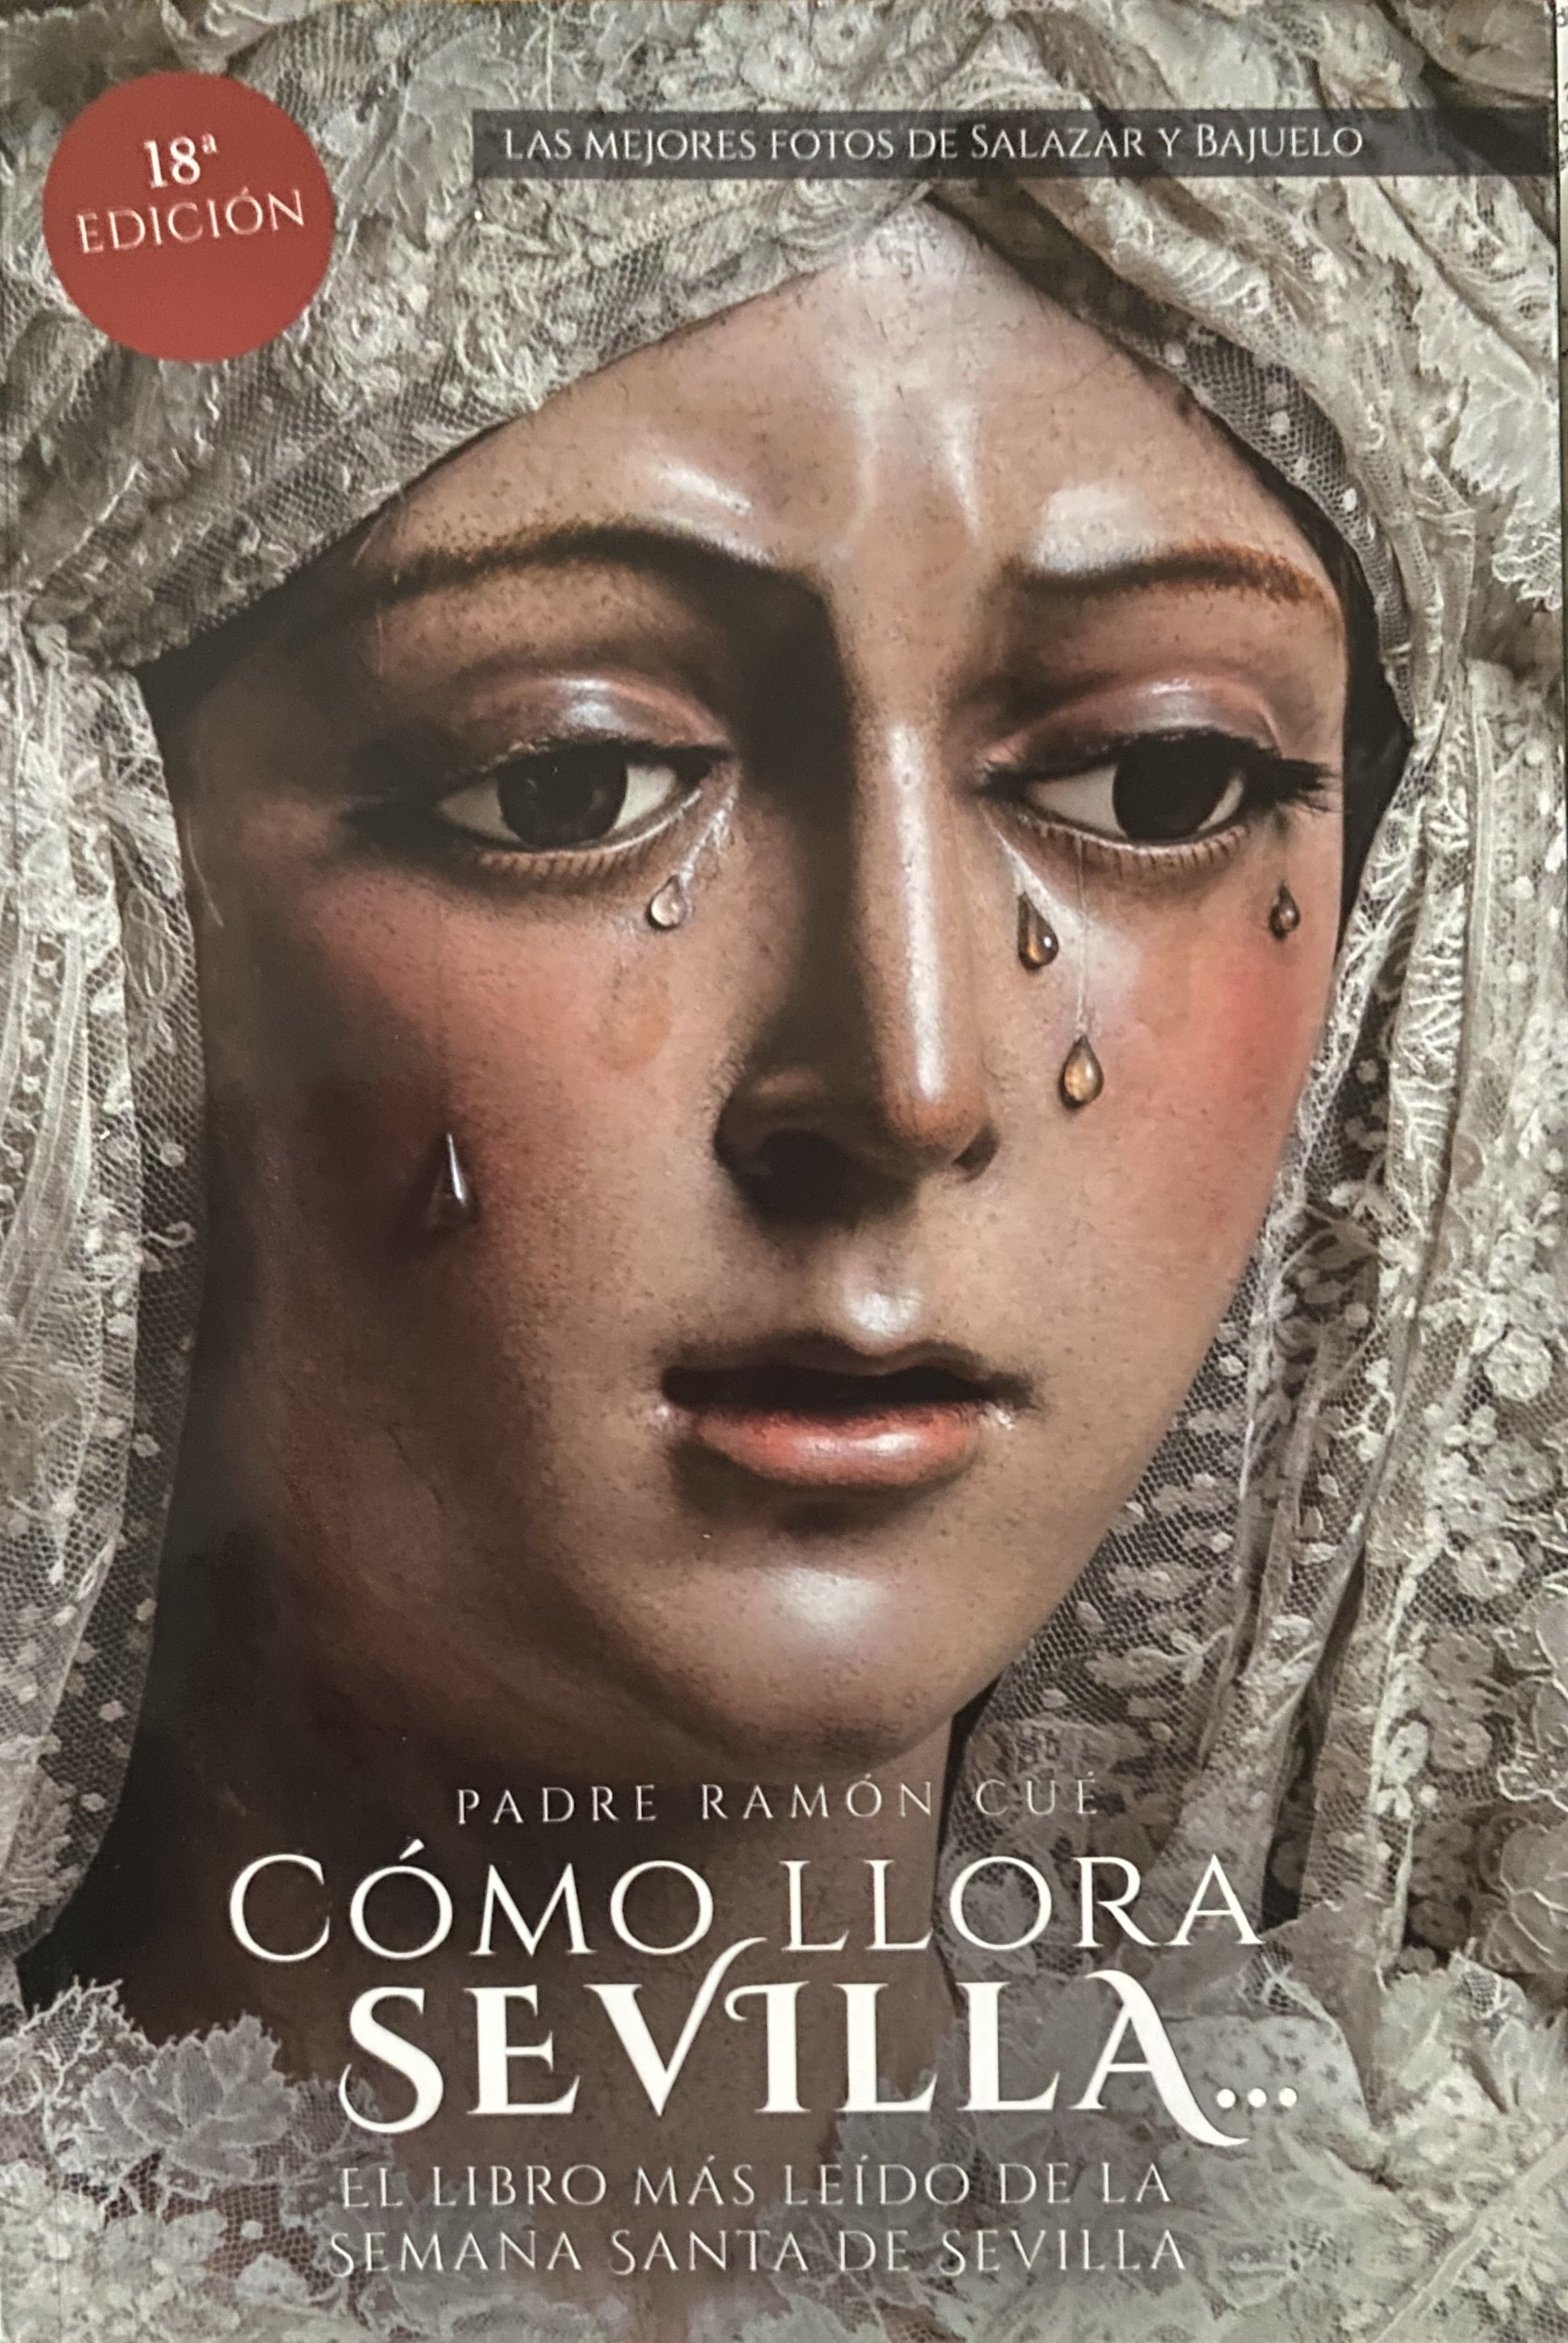 Portada de la nueva edición de 'Cómo llora Sevilla' del padre Cué.